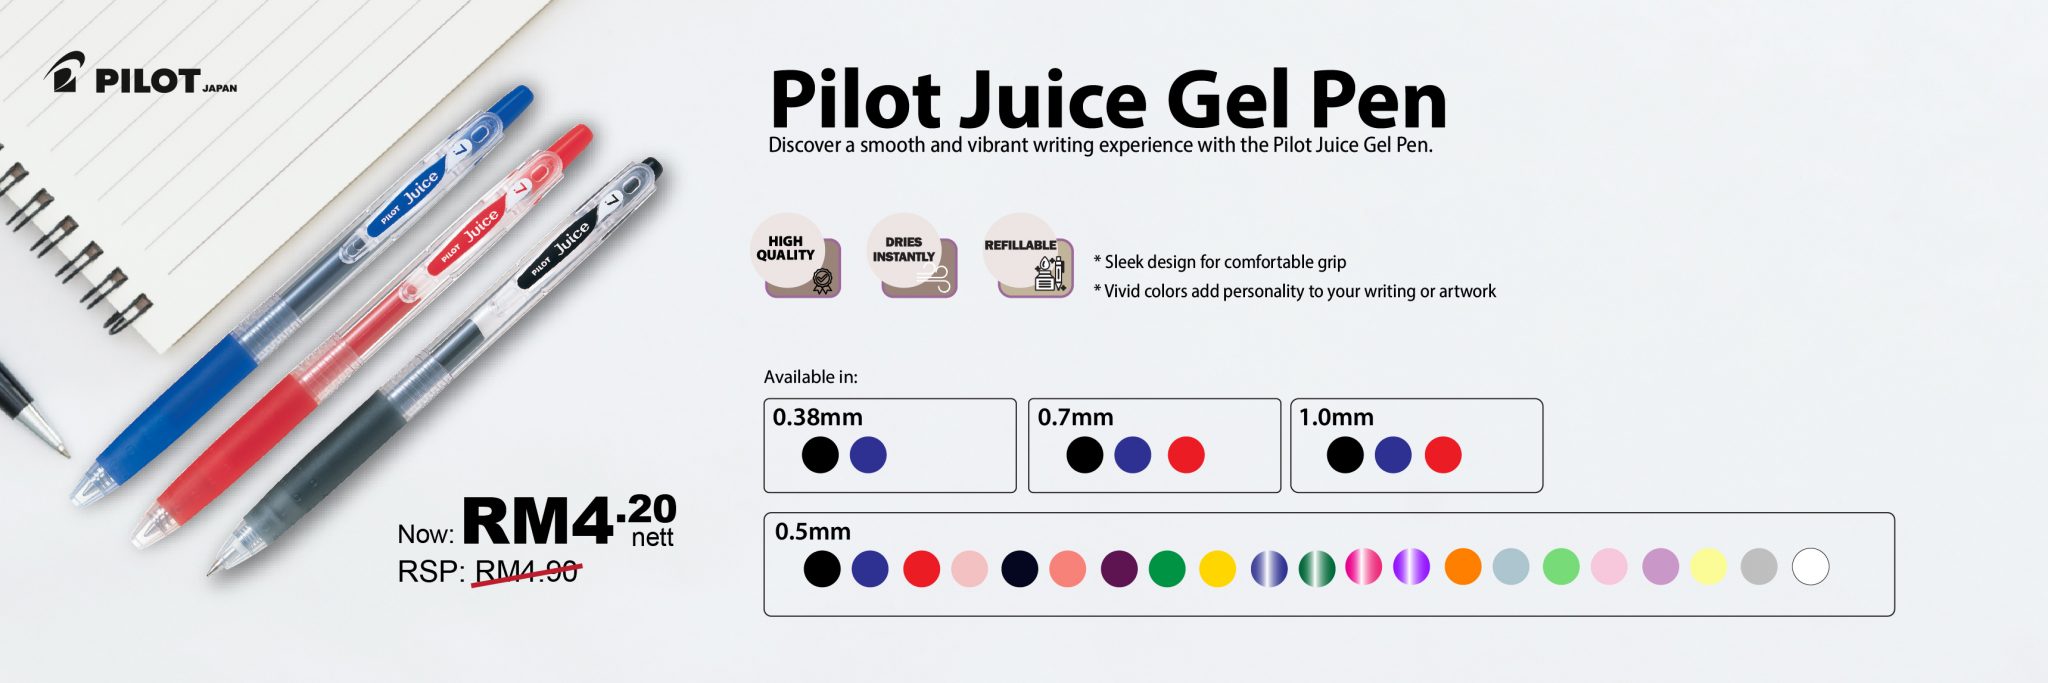 Pilot Juice Water Gel Pen_website-01